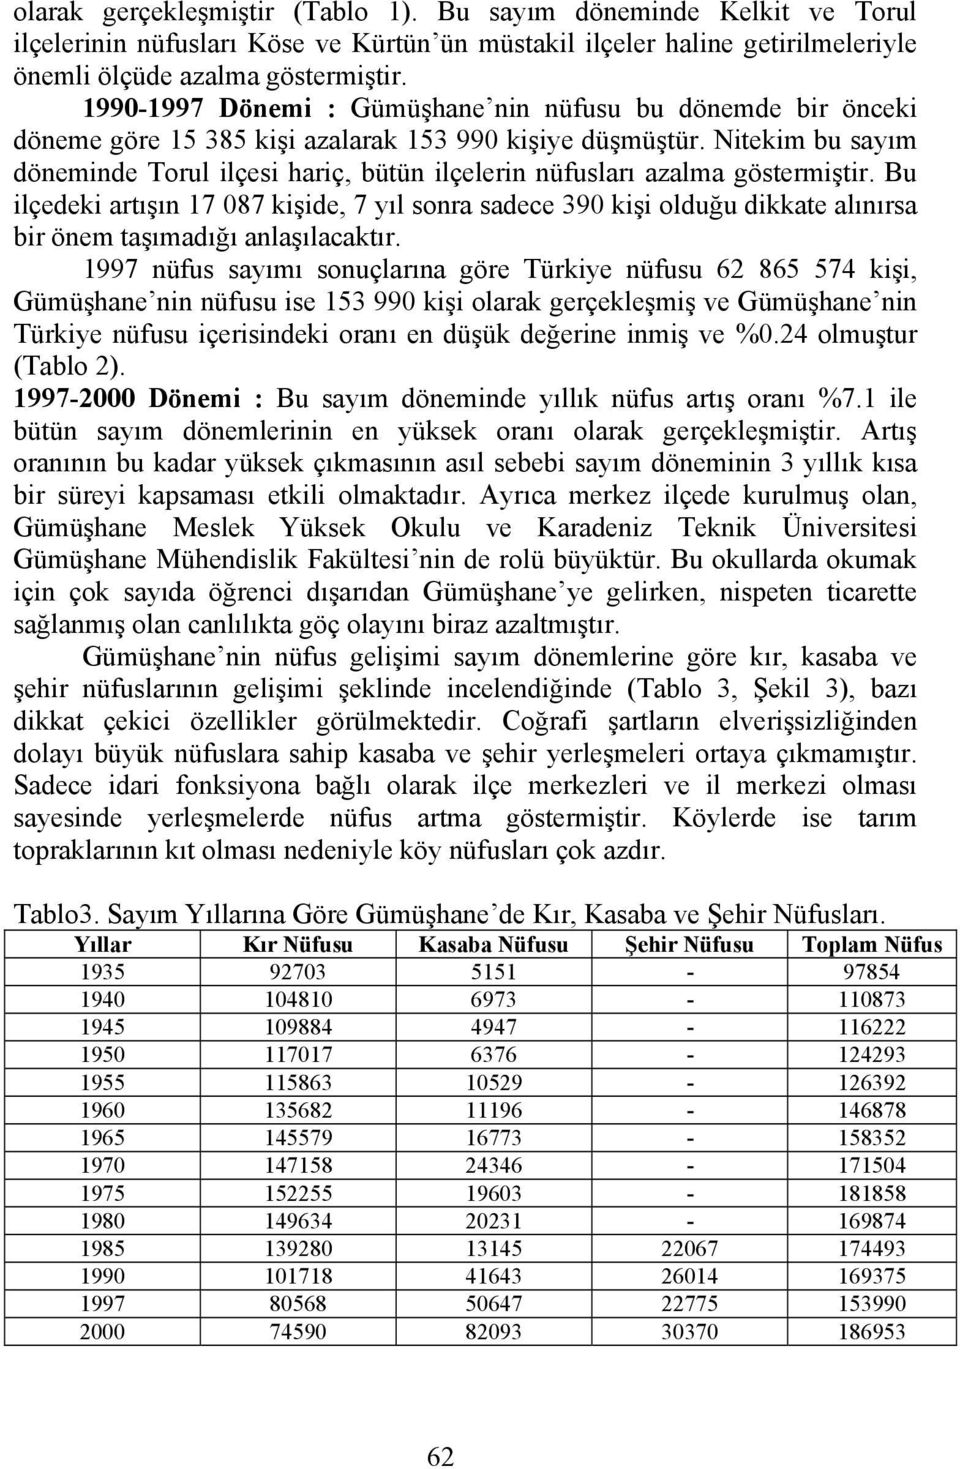 Nitekim bu sayım döneminde Torul ilçesi hariç, bütün ilçelerin nüfusları azalma göstermiştir.